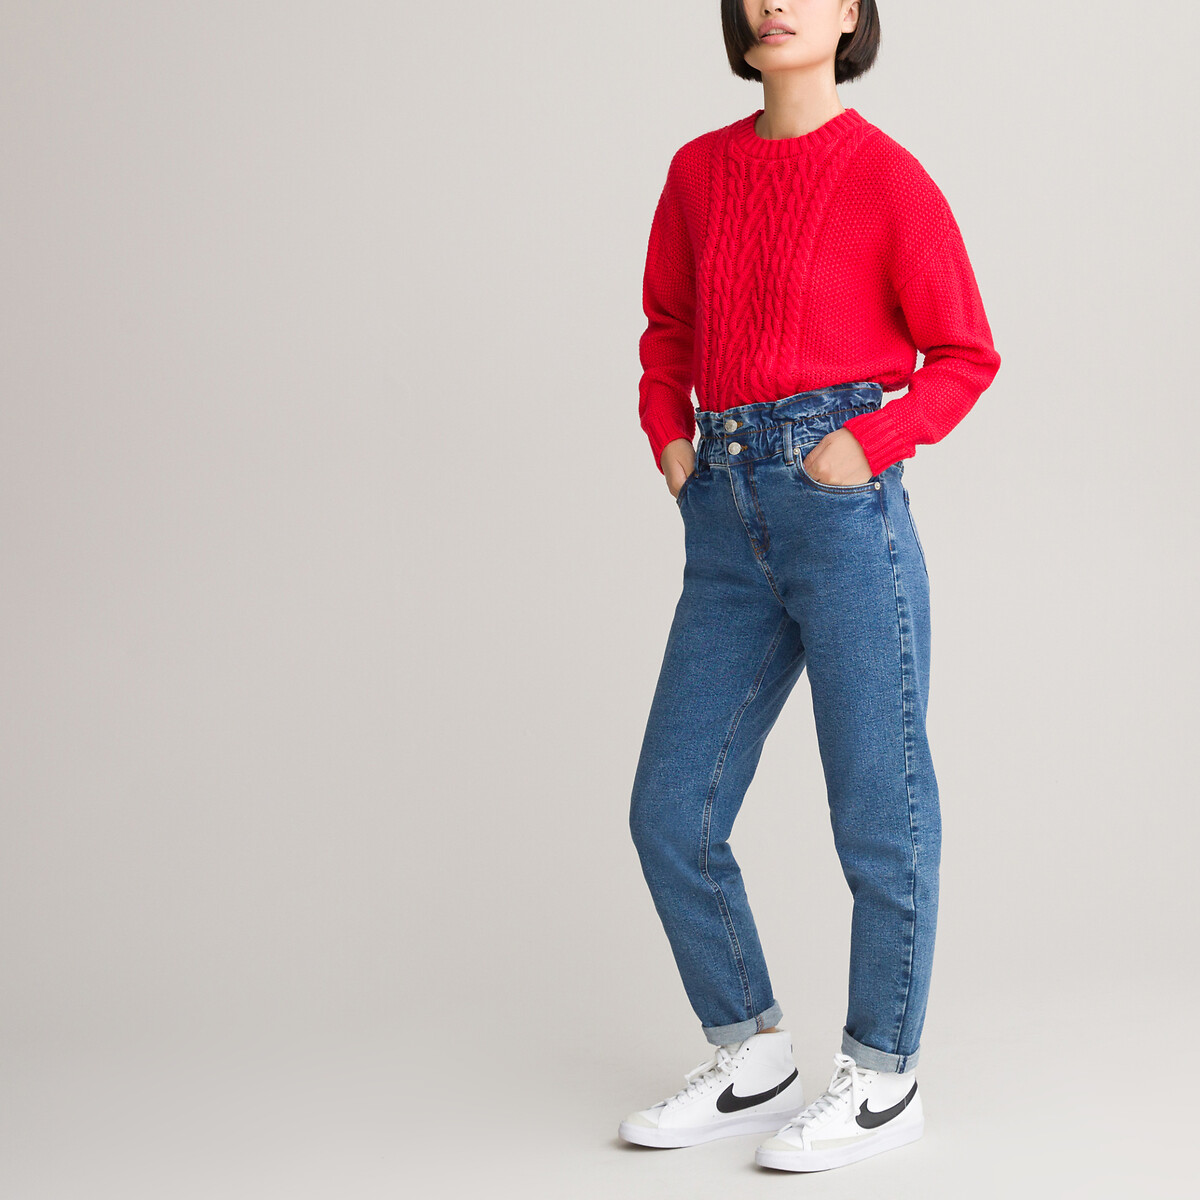 Пуловер LaRedoute С круглым вырезом из плотного трикотажа 10-18 лет 16 лет - 162 см красный, размер 16 лет - 162 см - фото 2